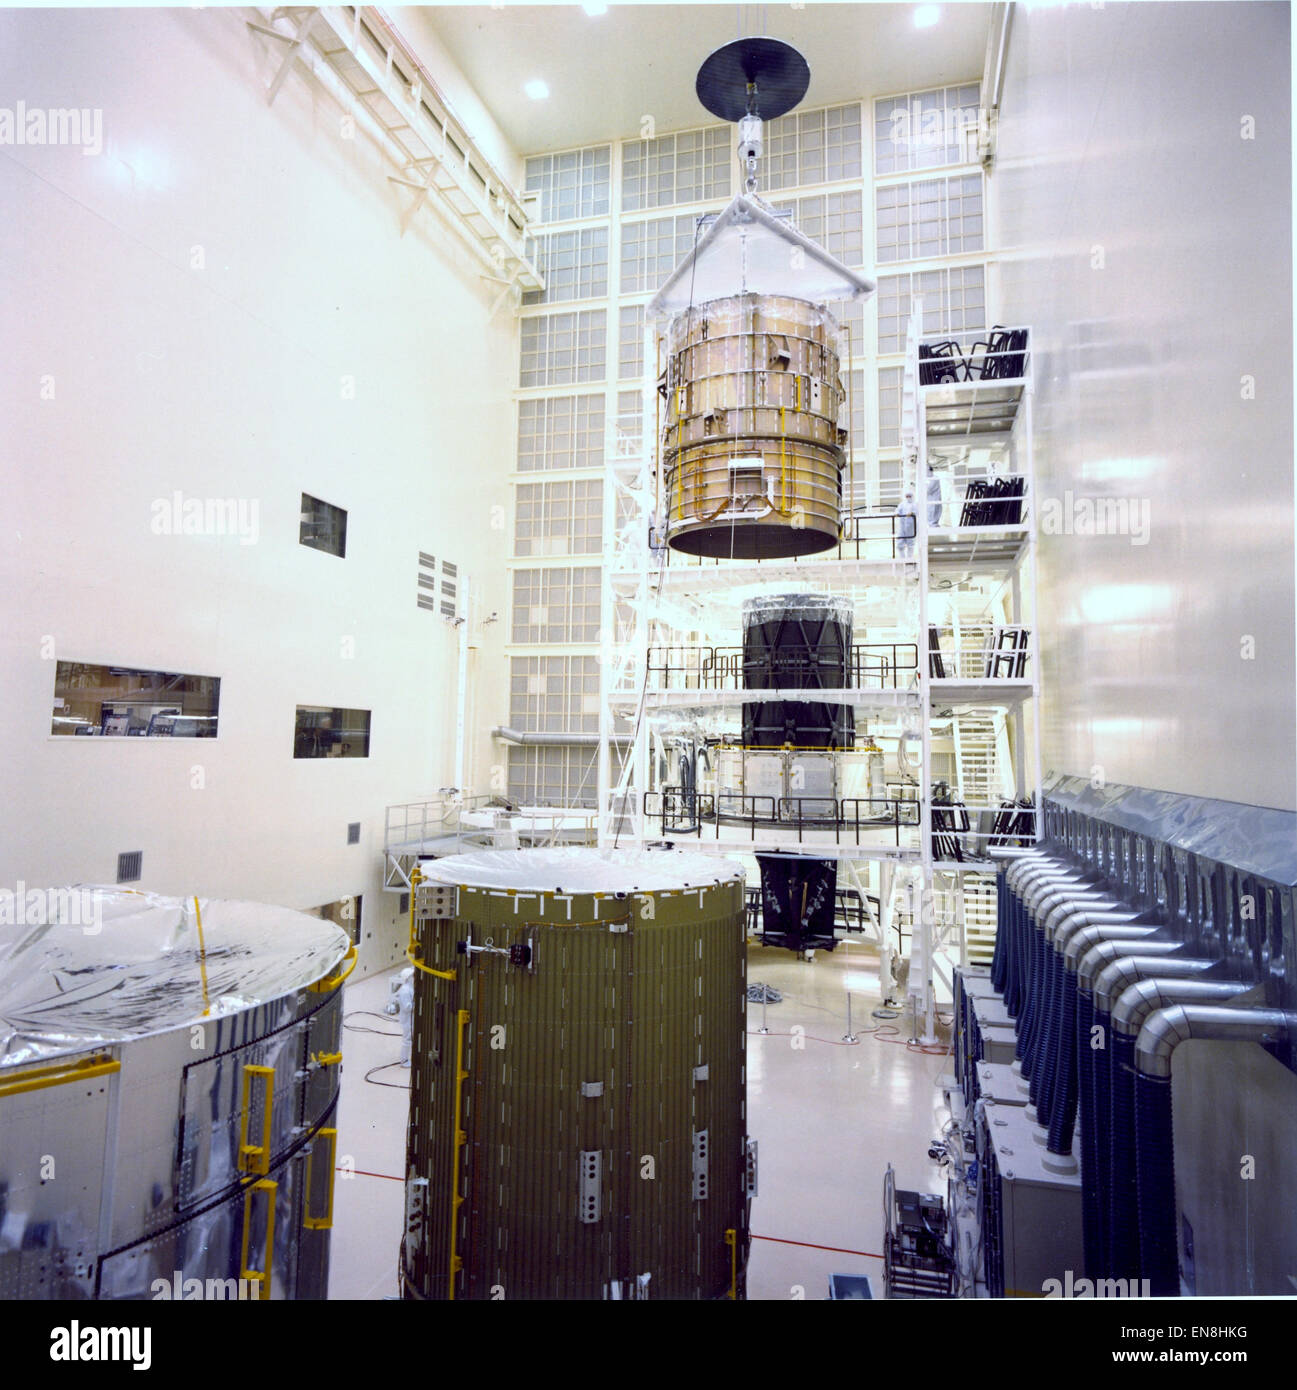 NASA il telescopio spaziale Hubble misure in appena al di sopra di 43 piedi di lunghezza e 14 metri di diametro. Quando il montante è a cinque piani torre che, quando pronti per il lancio, compilato il modulo orbitante di tutta la baia di payload. Hubble è costituito da tre elementi principali: il telescopio ottico complessivo, il piano focale strumenti scientifici e sistemi di supporto del modulo, che è divisa in quattro sezioni, impilati insieme come barattoli. In questa foto, tutti del Hubble strutture principali sono presenti come il guscio di avanzamento viene spostata nella posizione per l'accoppiamento di Lockheed Martin's 535,000 piede cubico, verticale come Foto Stock